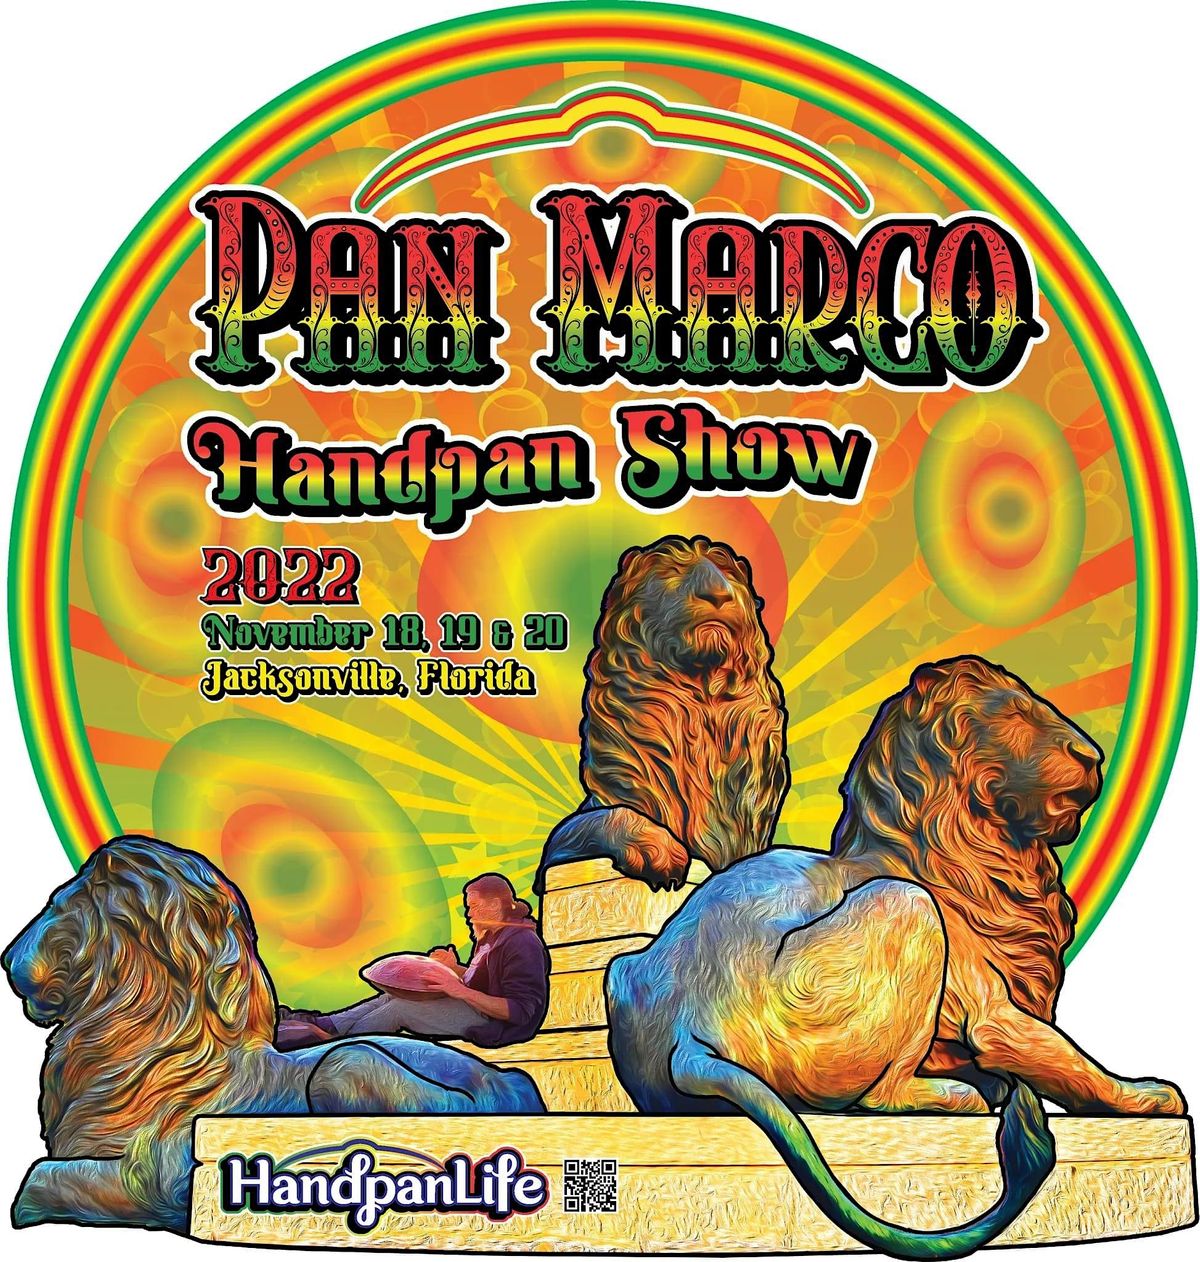 Pan Marco \u201822 Sunday Concert